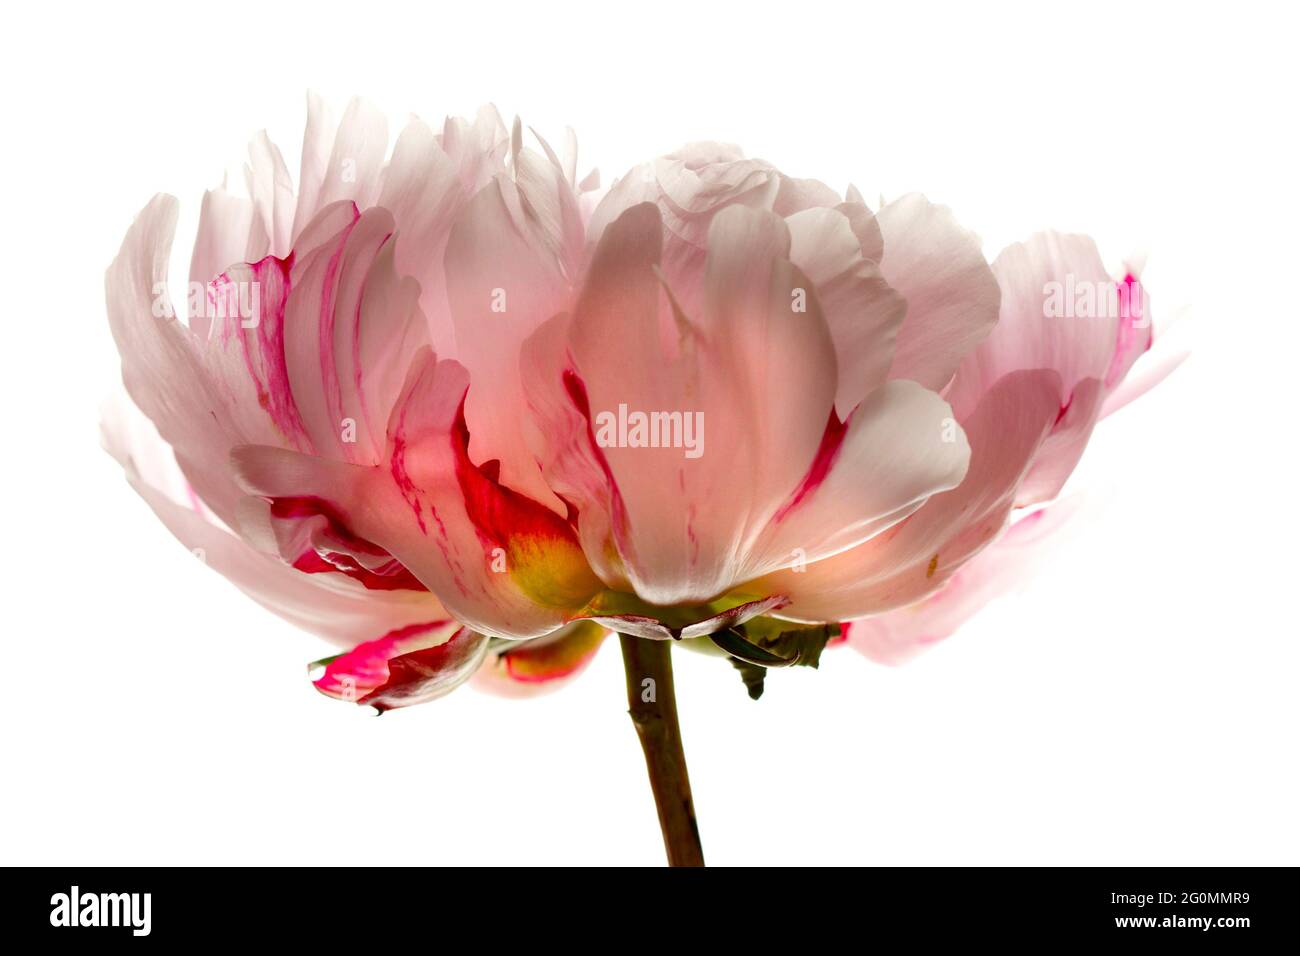 Une image de studio (fond blanc) d'une pivoine rose pâle/blanche marbrée de framboise: Paeonia Lactisflora Candy Stripe, une belle fleur. Banque D'Images